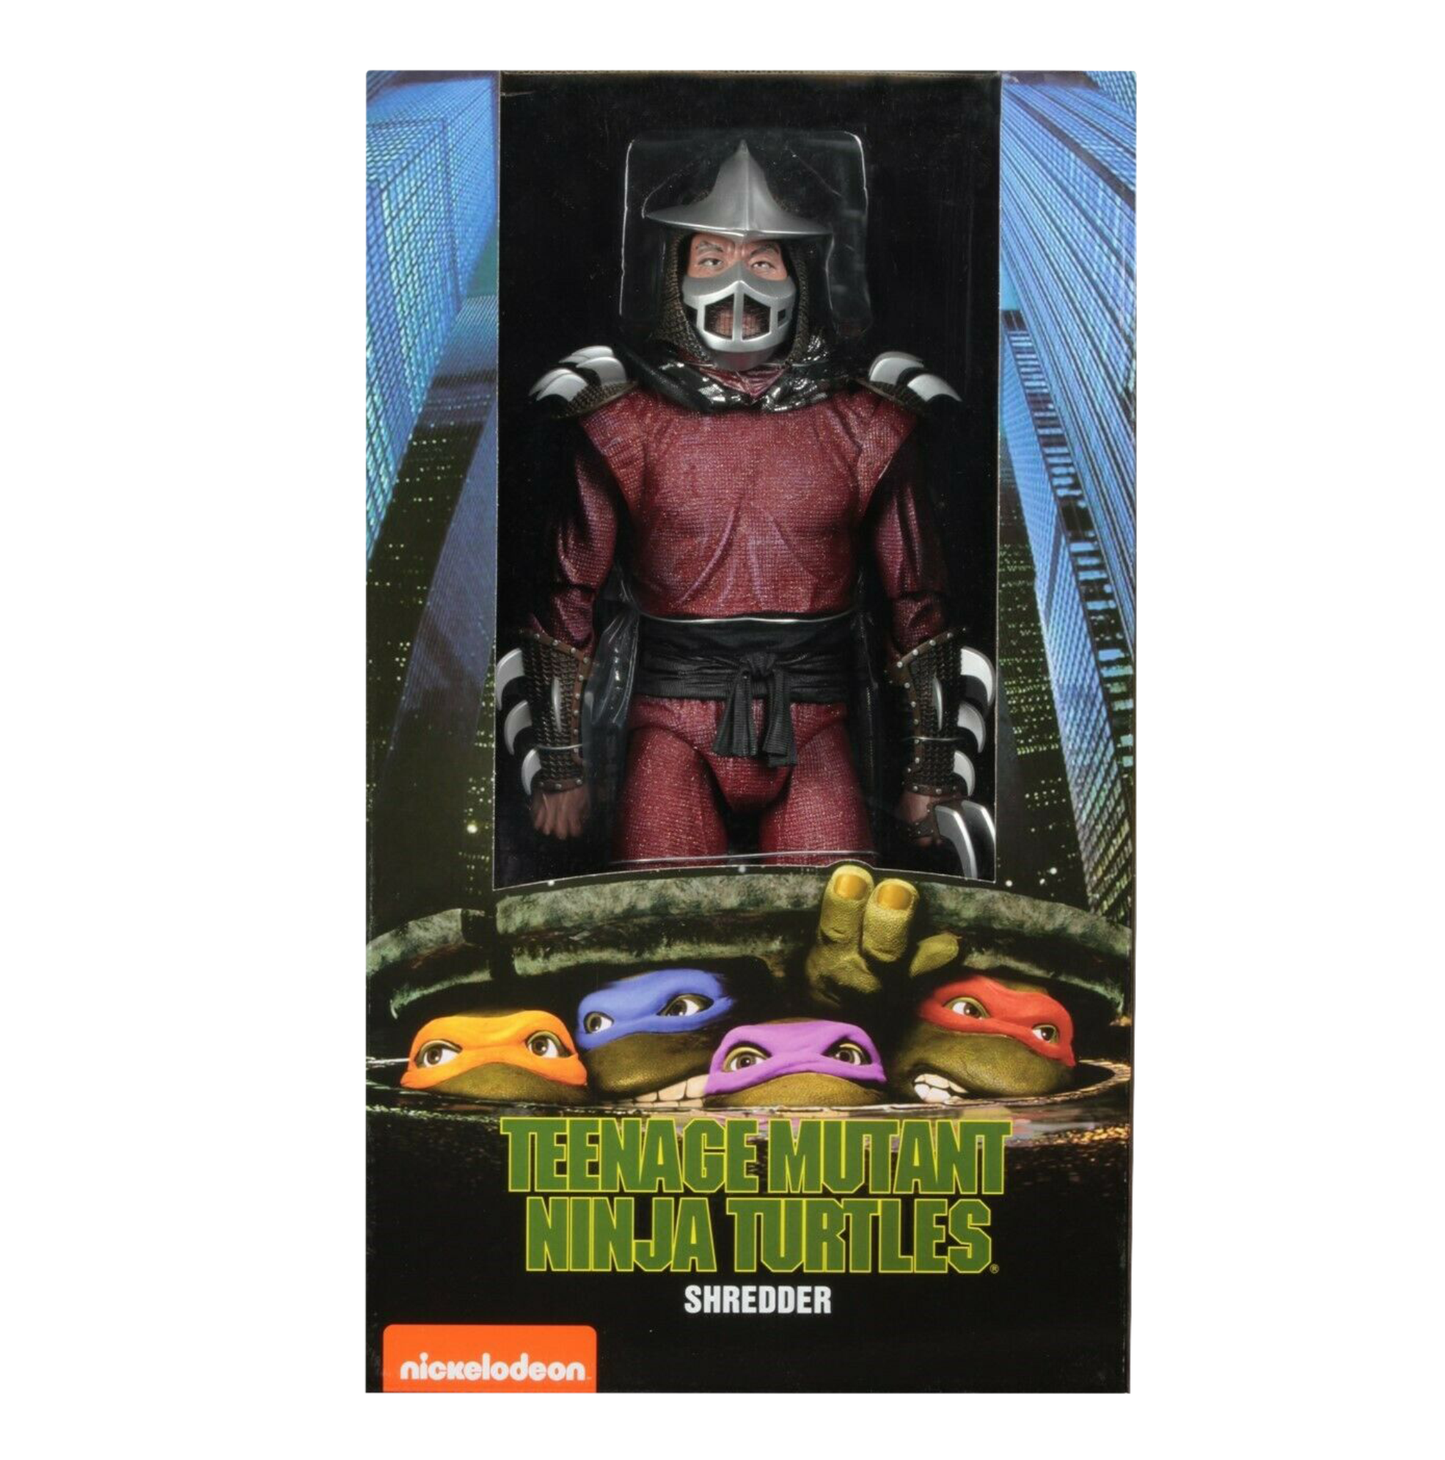 Teenage Mutant Ninja Turtles (1990) - Shredder 7” Action Figure